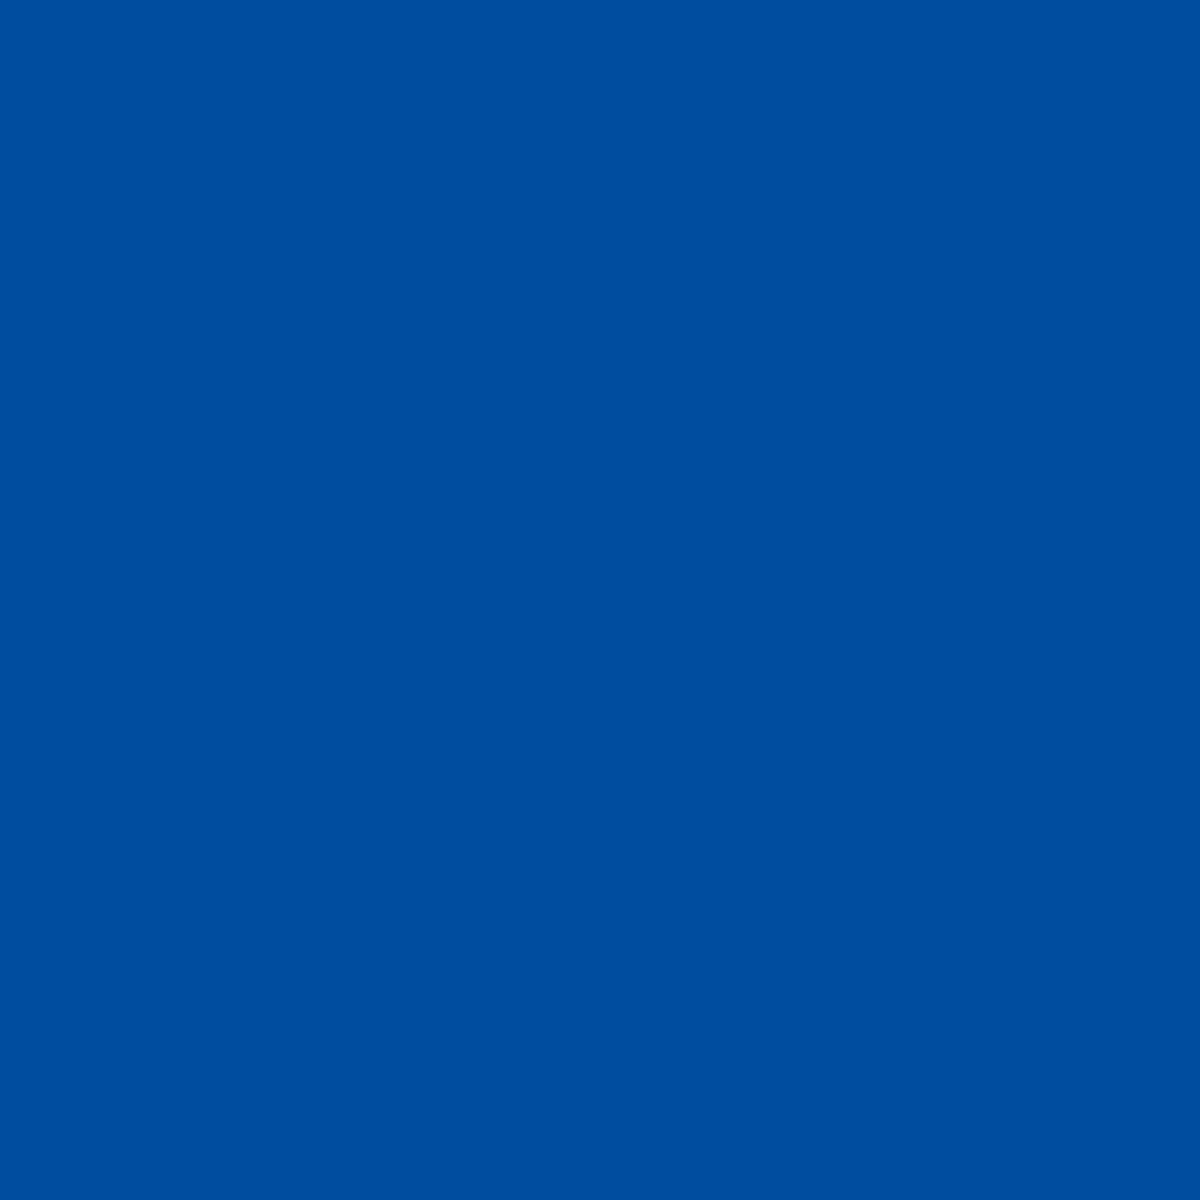 3M Envision transparante kleurenfolie 3730-167L helderblauw 1,22m x 45,7m